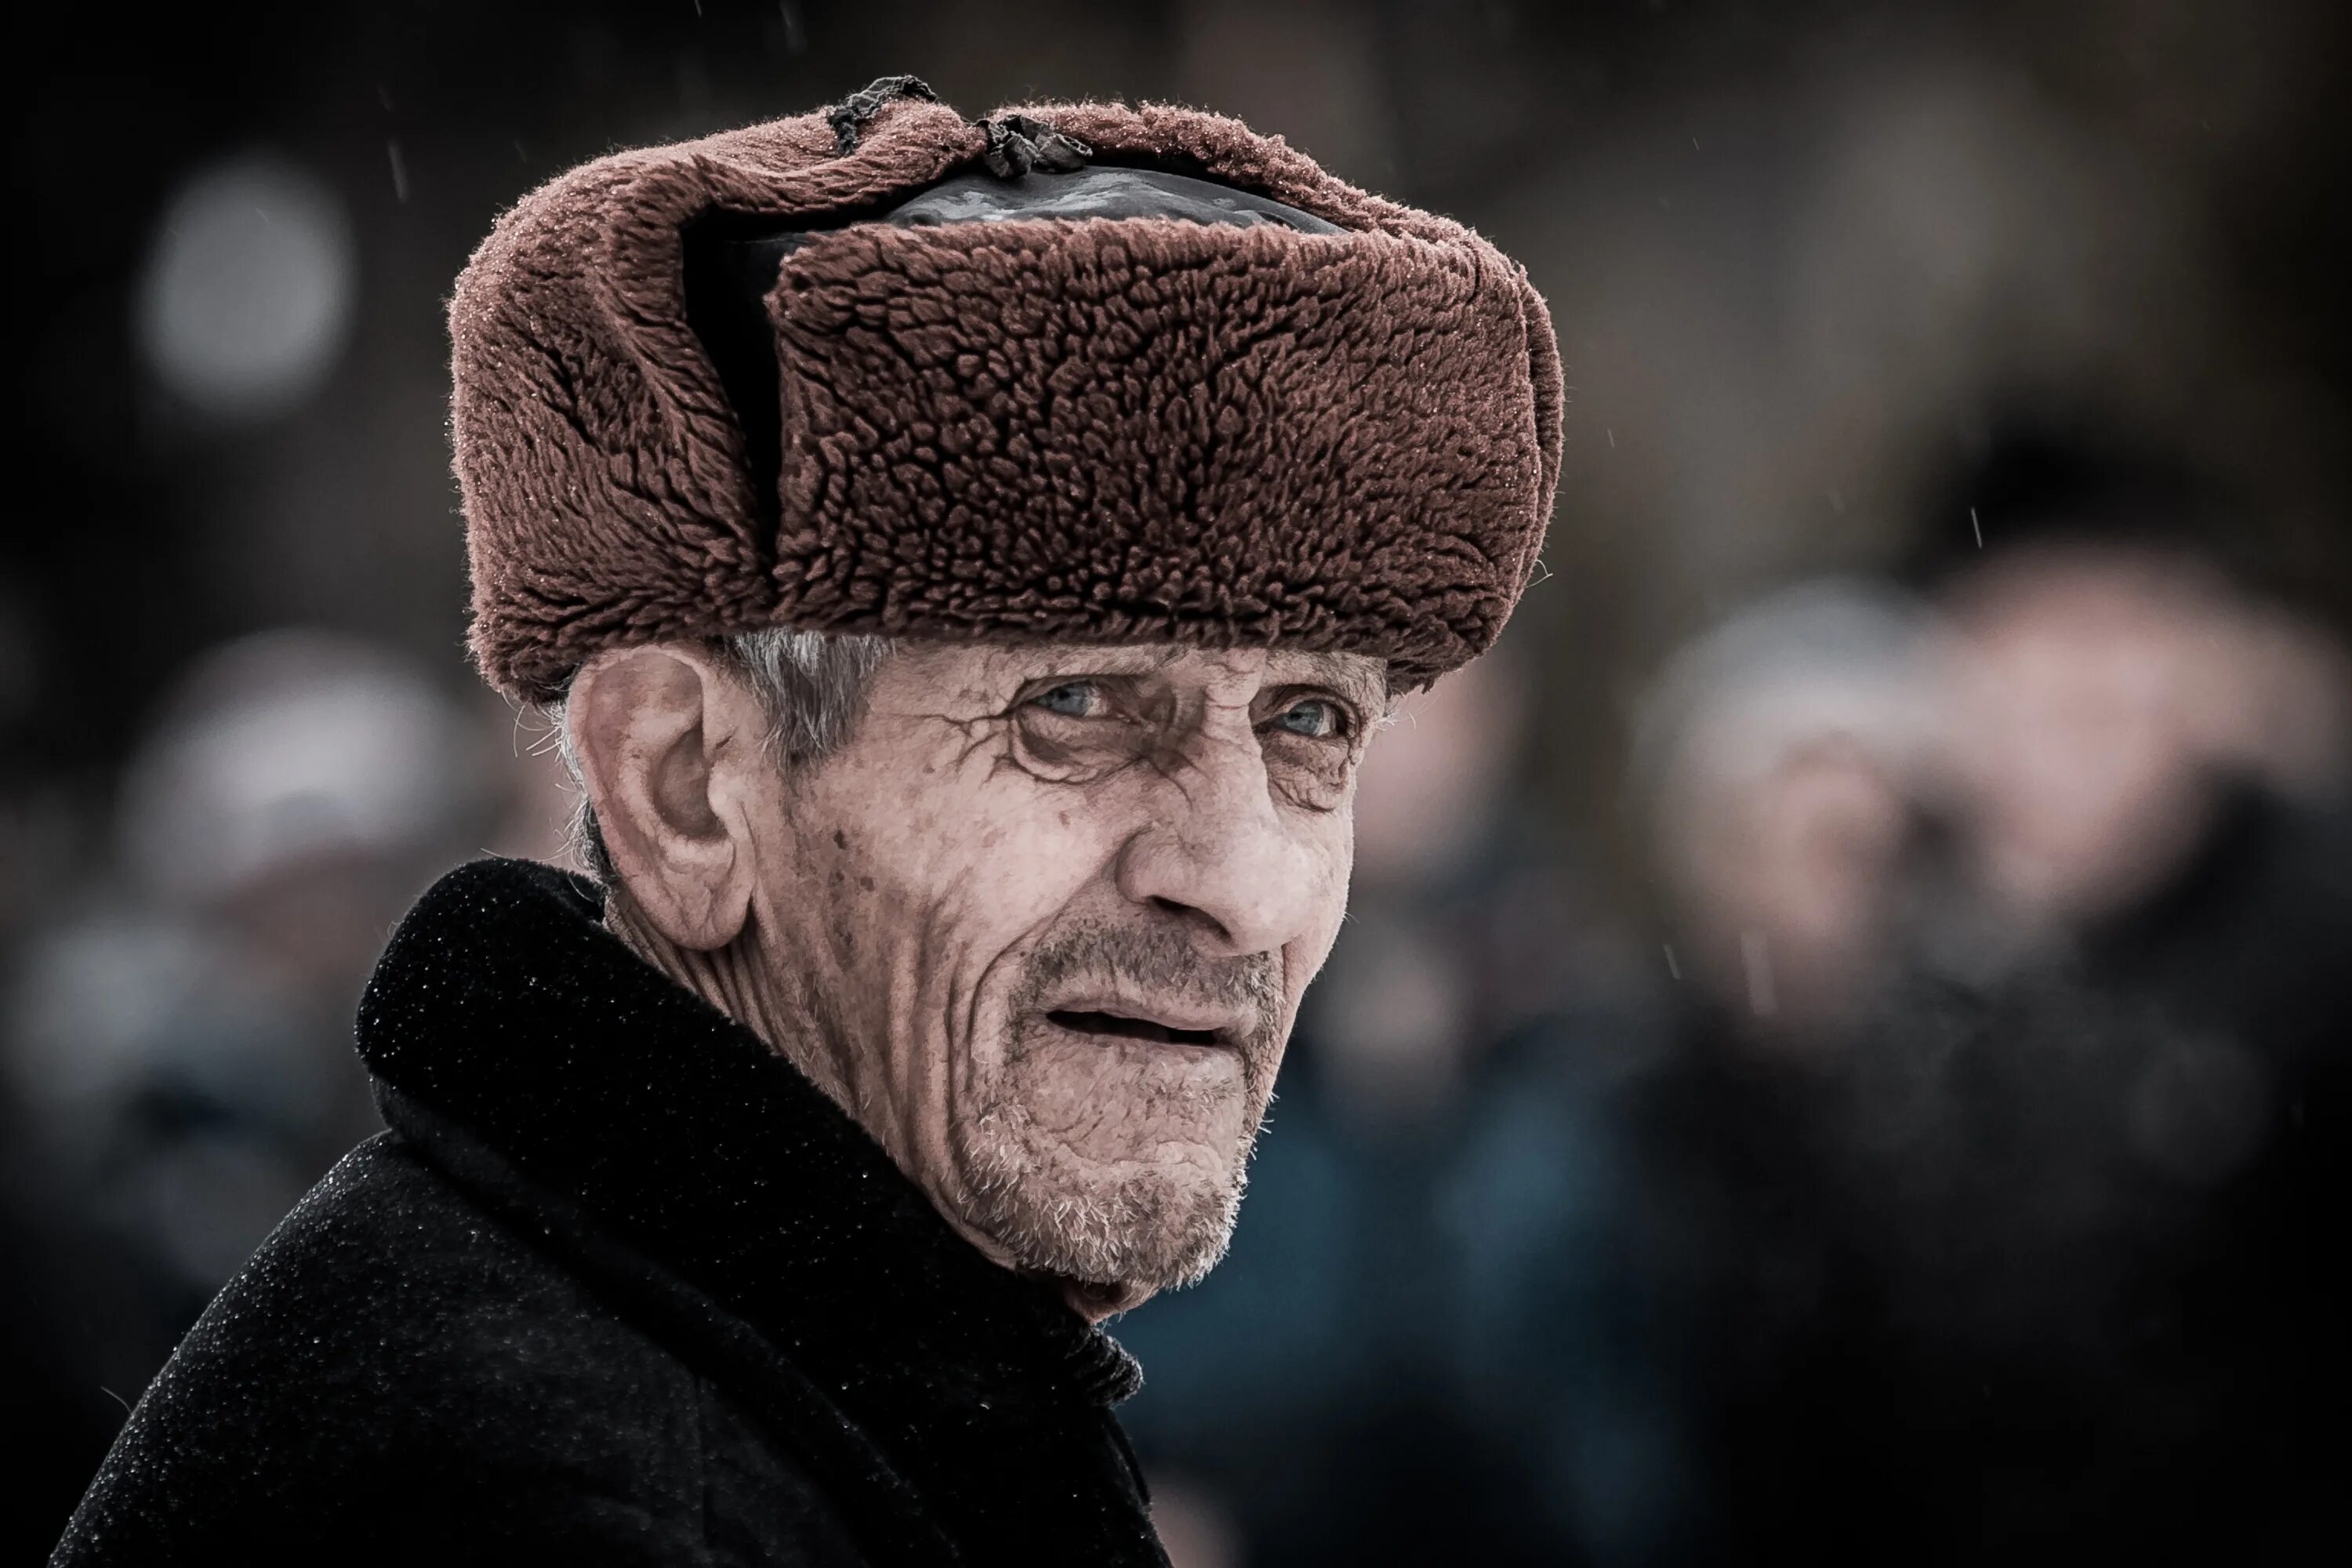 Форум старый мужчина. Старик в ушанке. Пожилой мужчина. Старик в шапке. Фото пожилого мужчины.